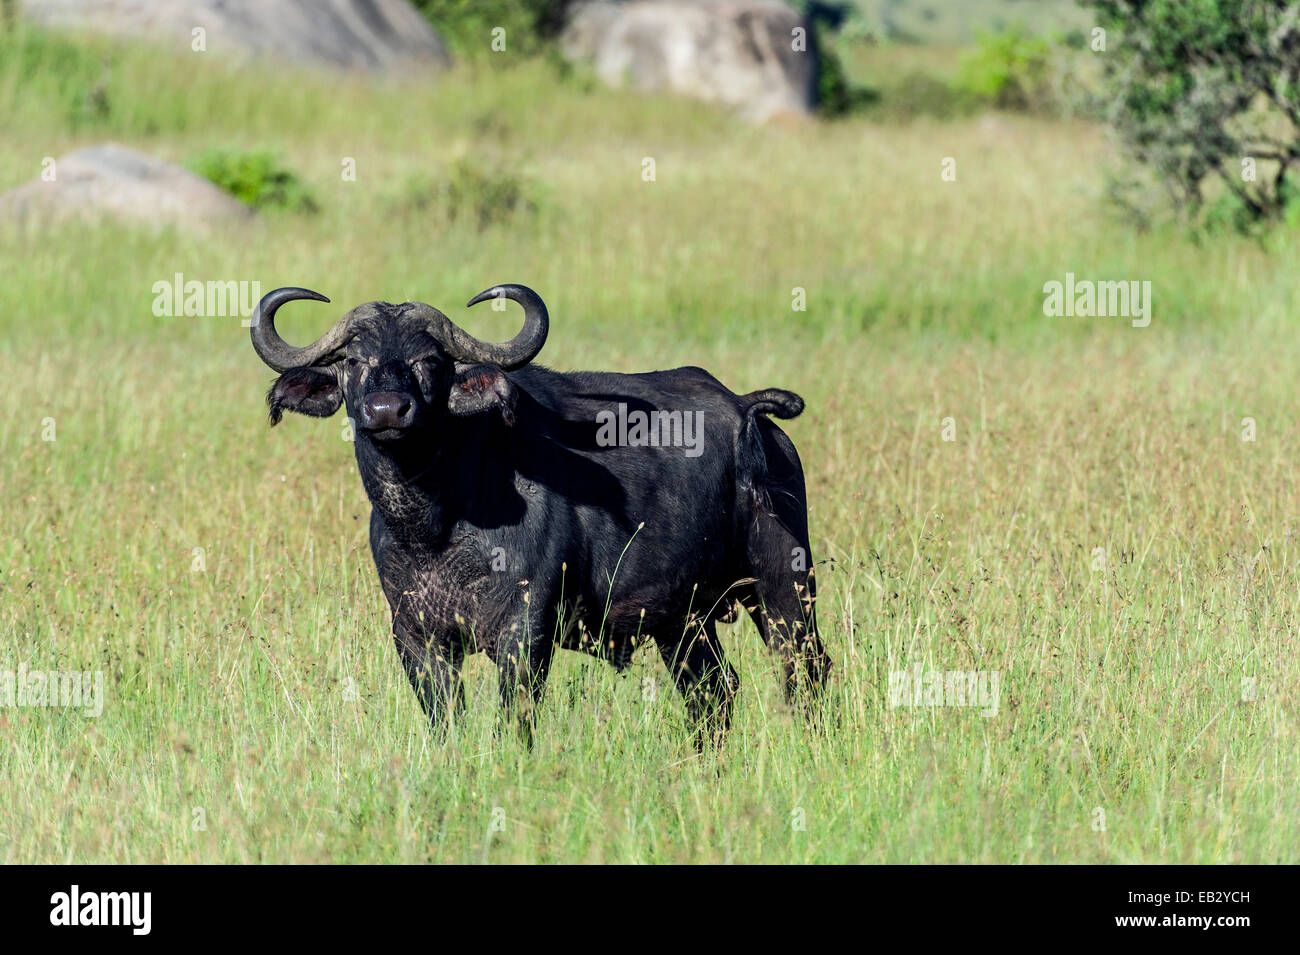 Una alerta el búfalo africano con afilados cuernos de pie sobre una llanura de pastizales. Foto de stock